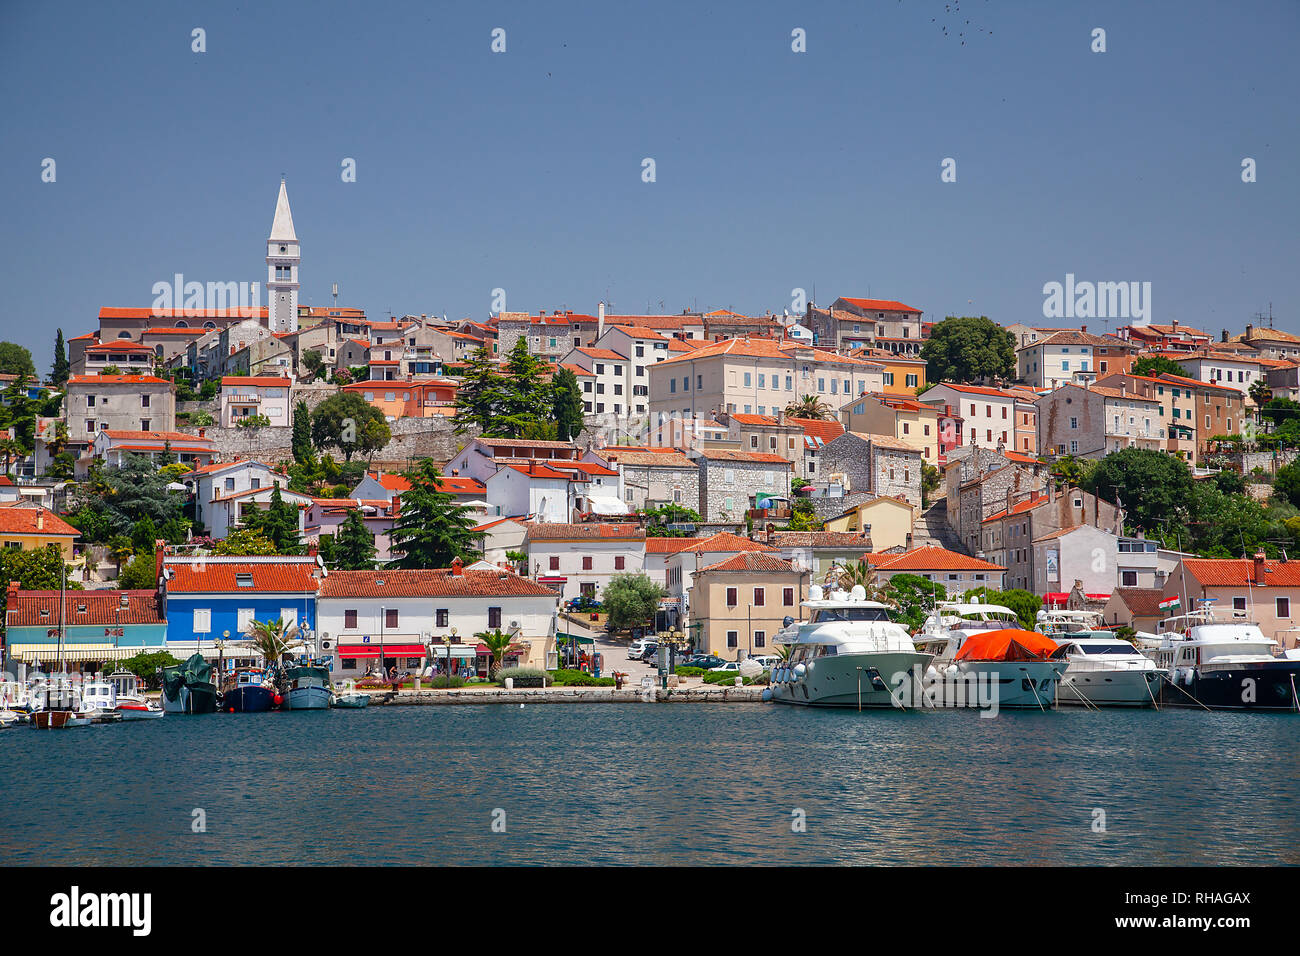 Blick vom Meer auf der alten historischen Stadt Porec, Kroatien. Reisen in Europa. Stockfoto